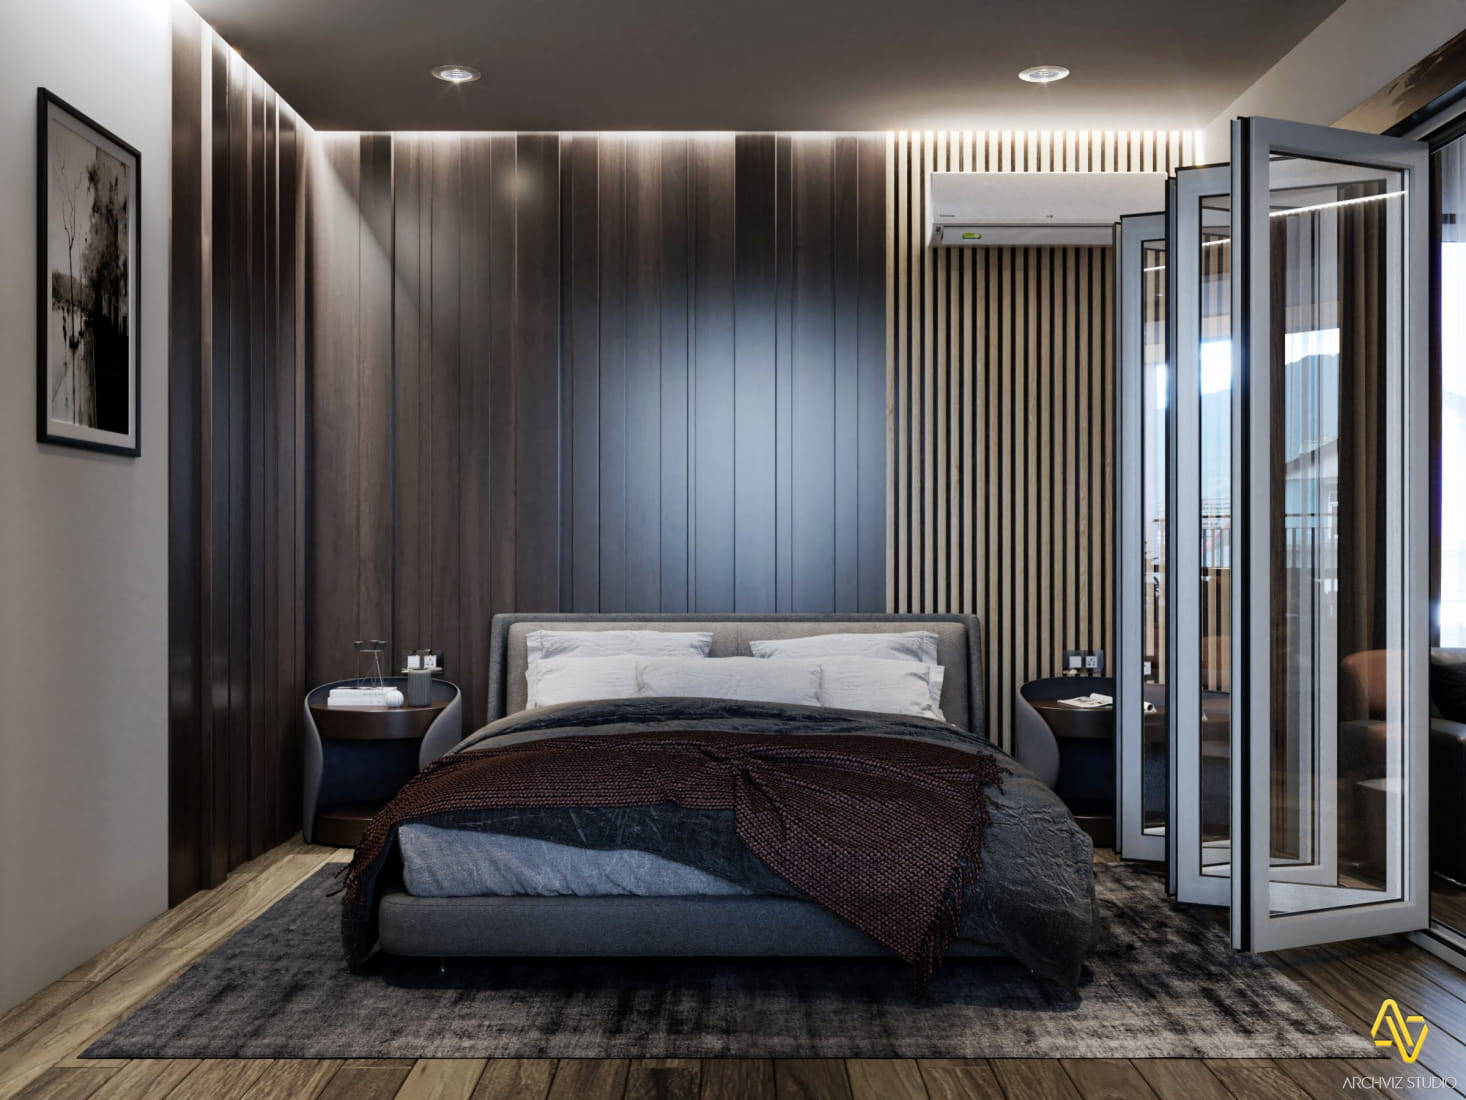 bedroom-interior-3dsmax-vray5